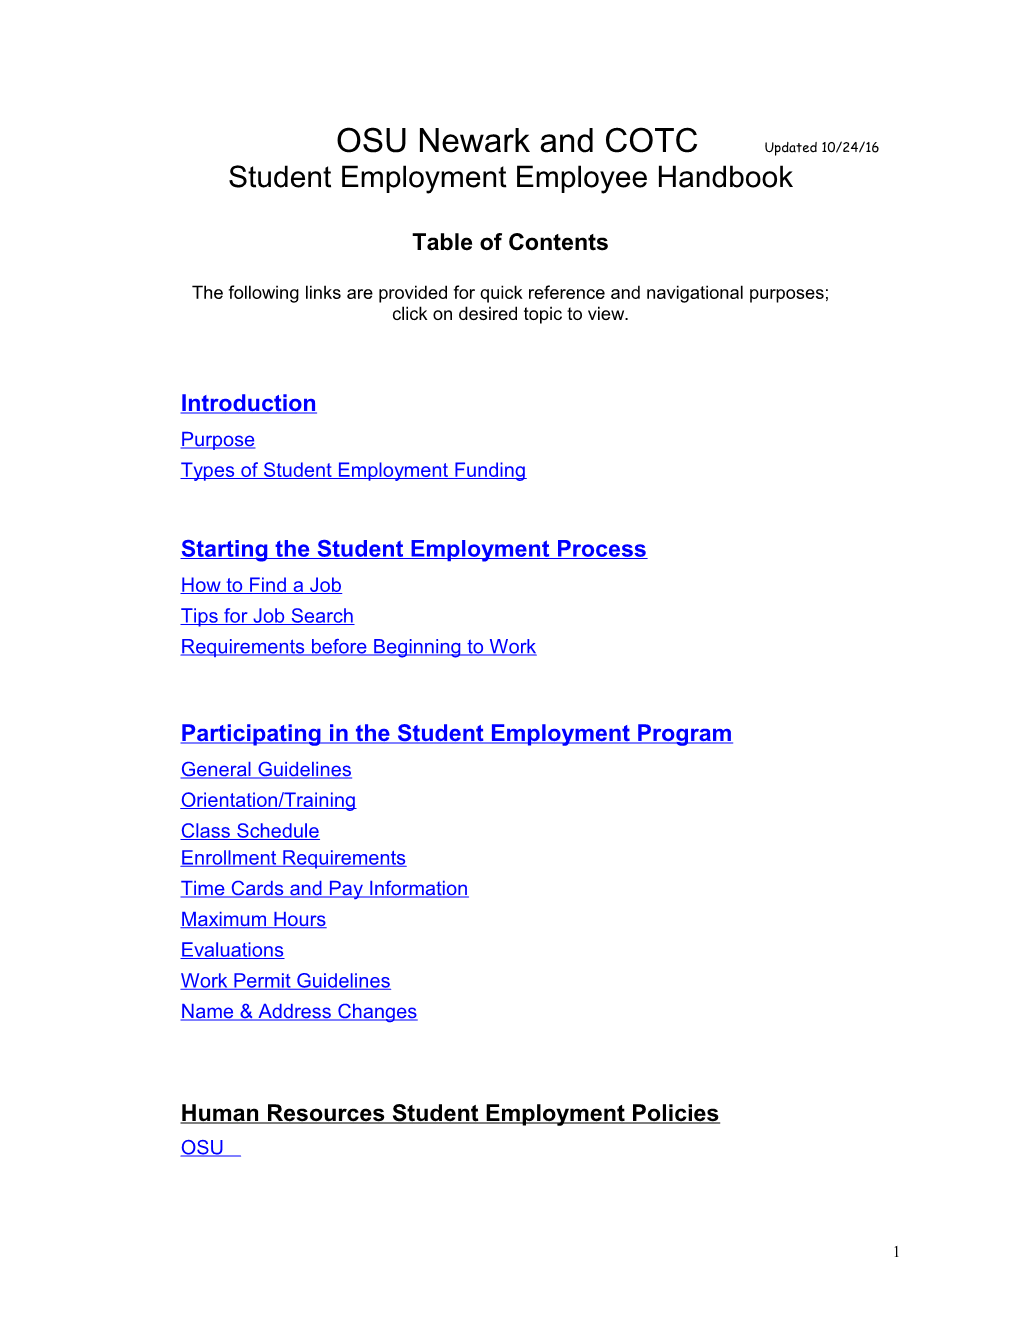 Student Handbook for Campus Employment